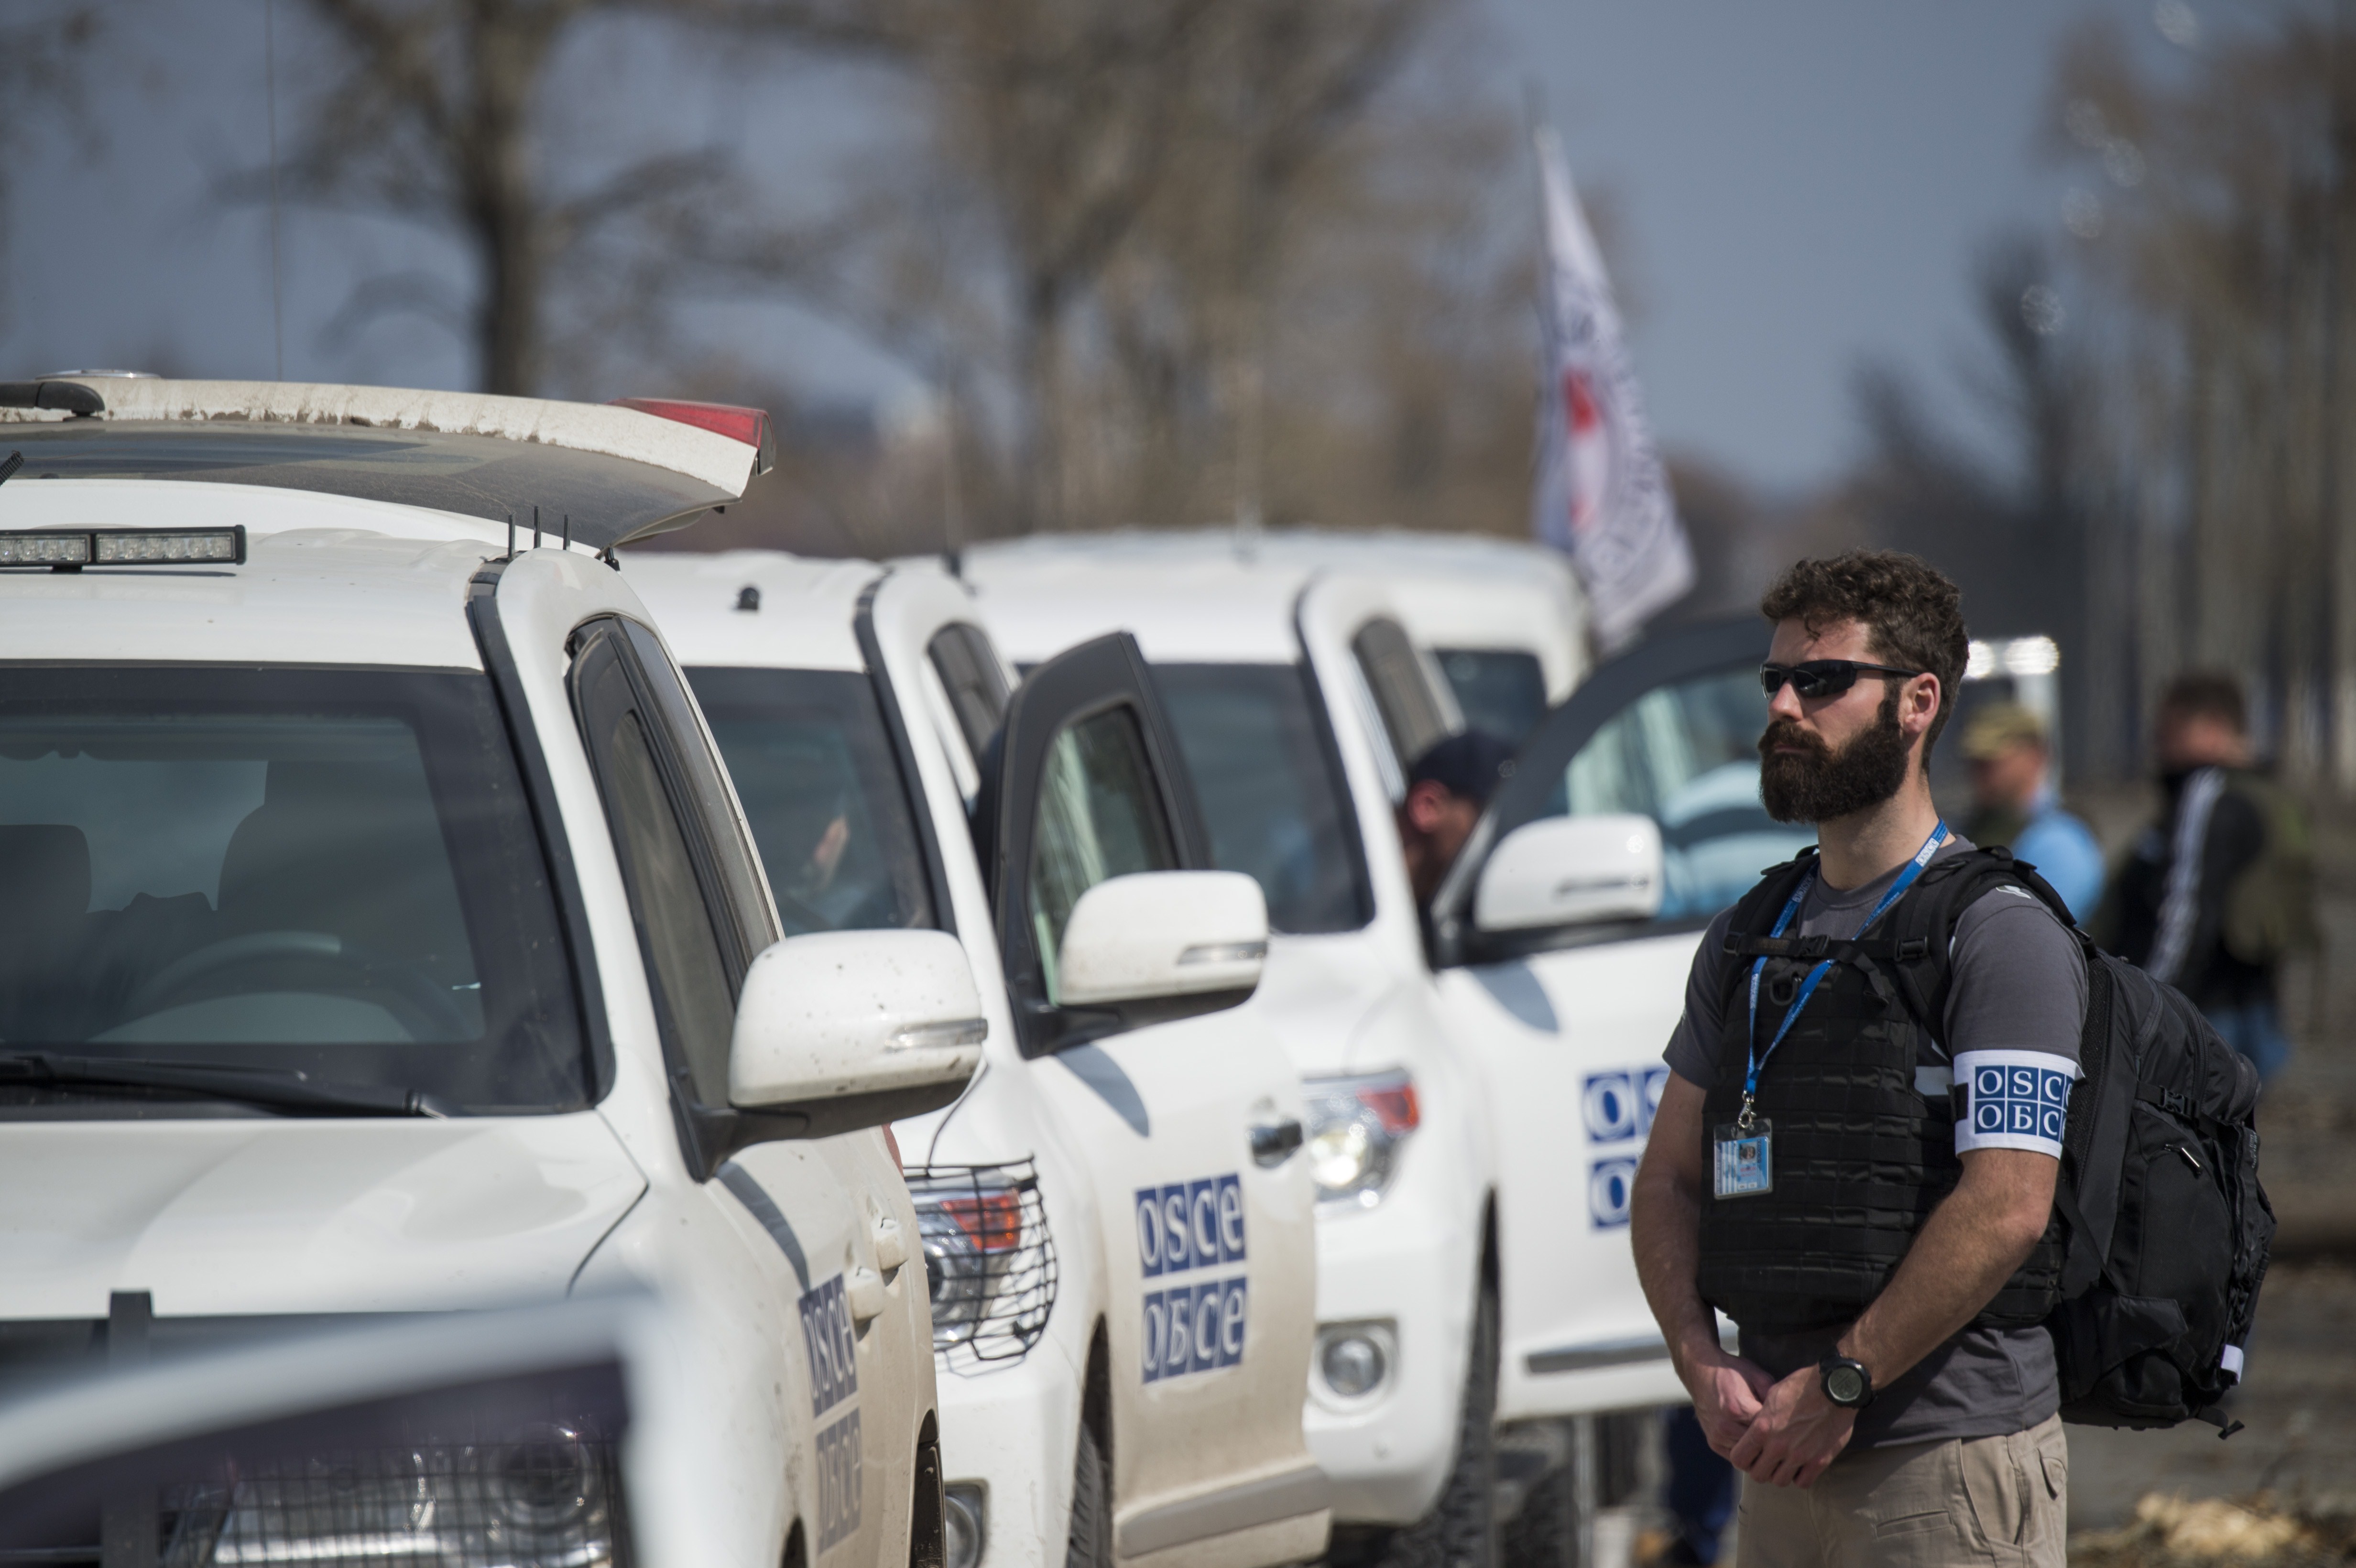 OSZE-Mitarbeiter im Osten der Ukraine getötet